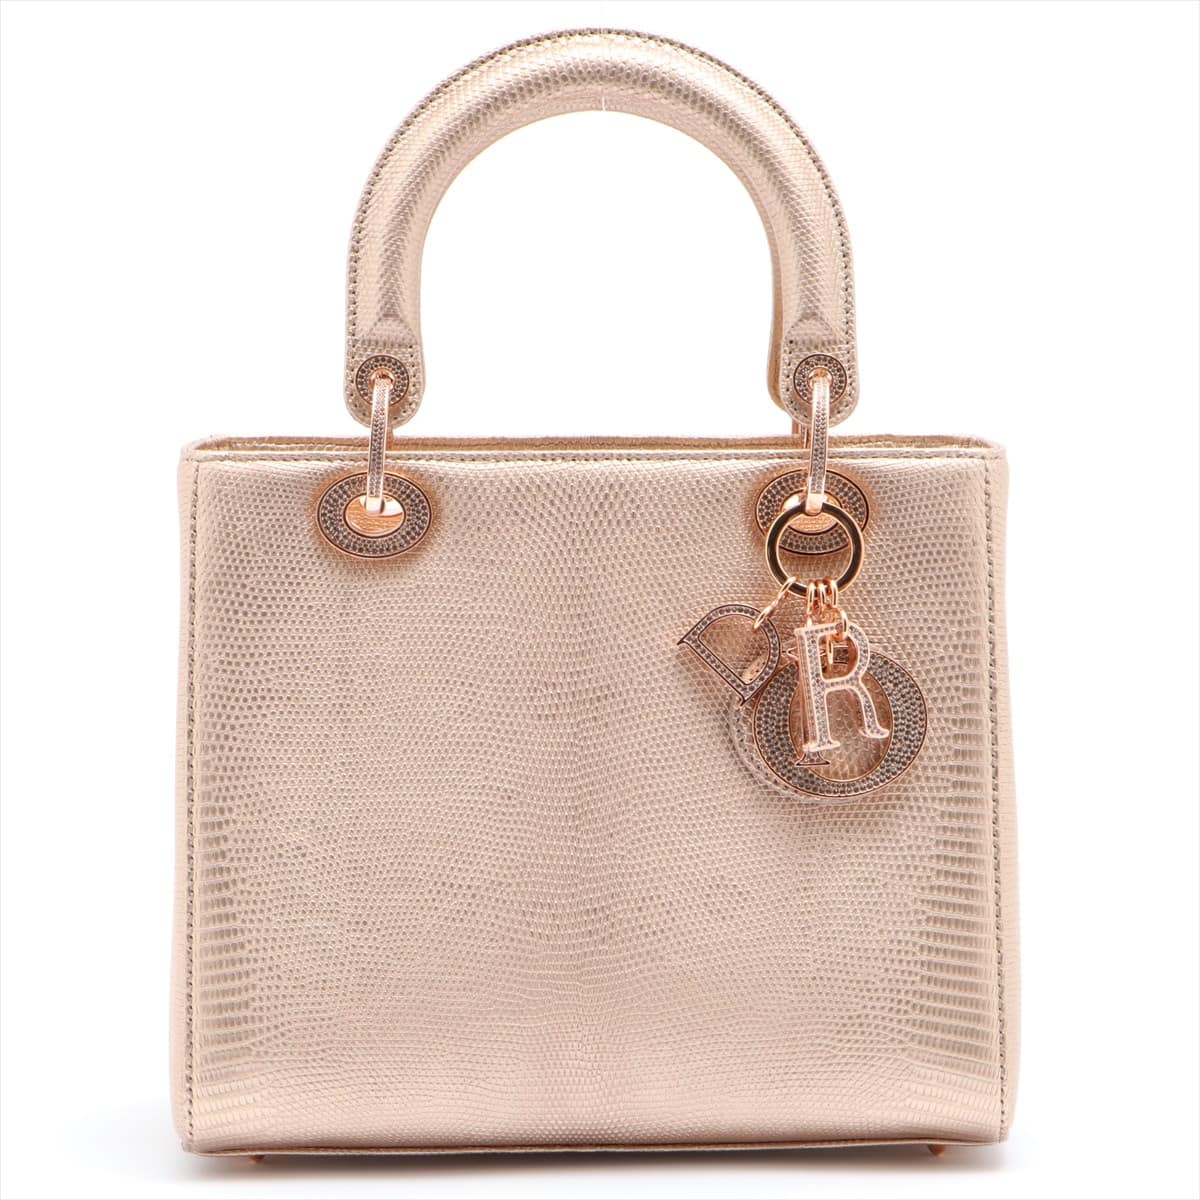 Christian Dior Lady Dior Lizard 2way handbag Gold with rhinestones